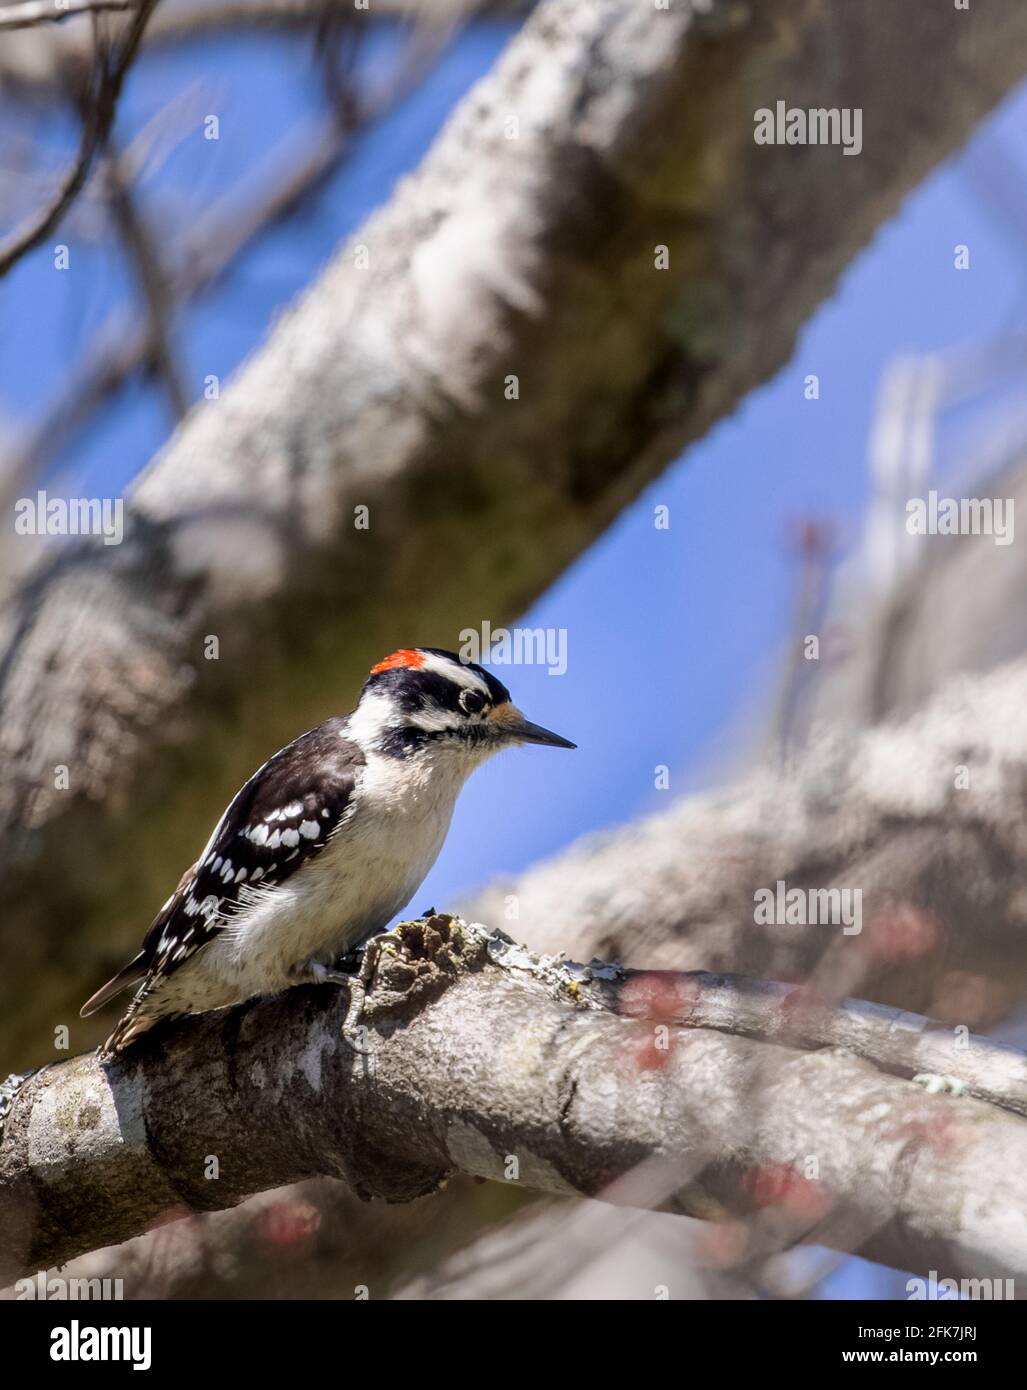 Pic à bois (picoides pubescens) - Comté de Hall, Géorgie. Homme Downy woodpecker prenant une pause de la recherche quotidienne de nourriture. Banque D'Images